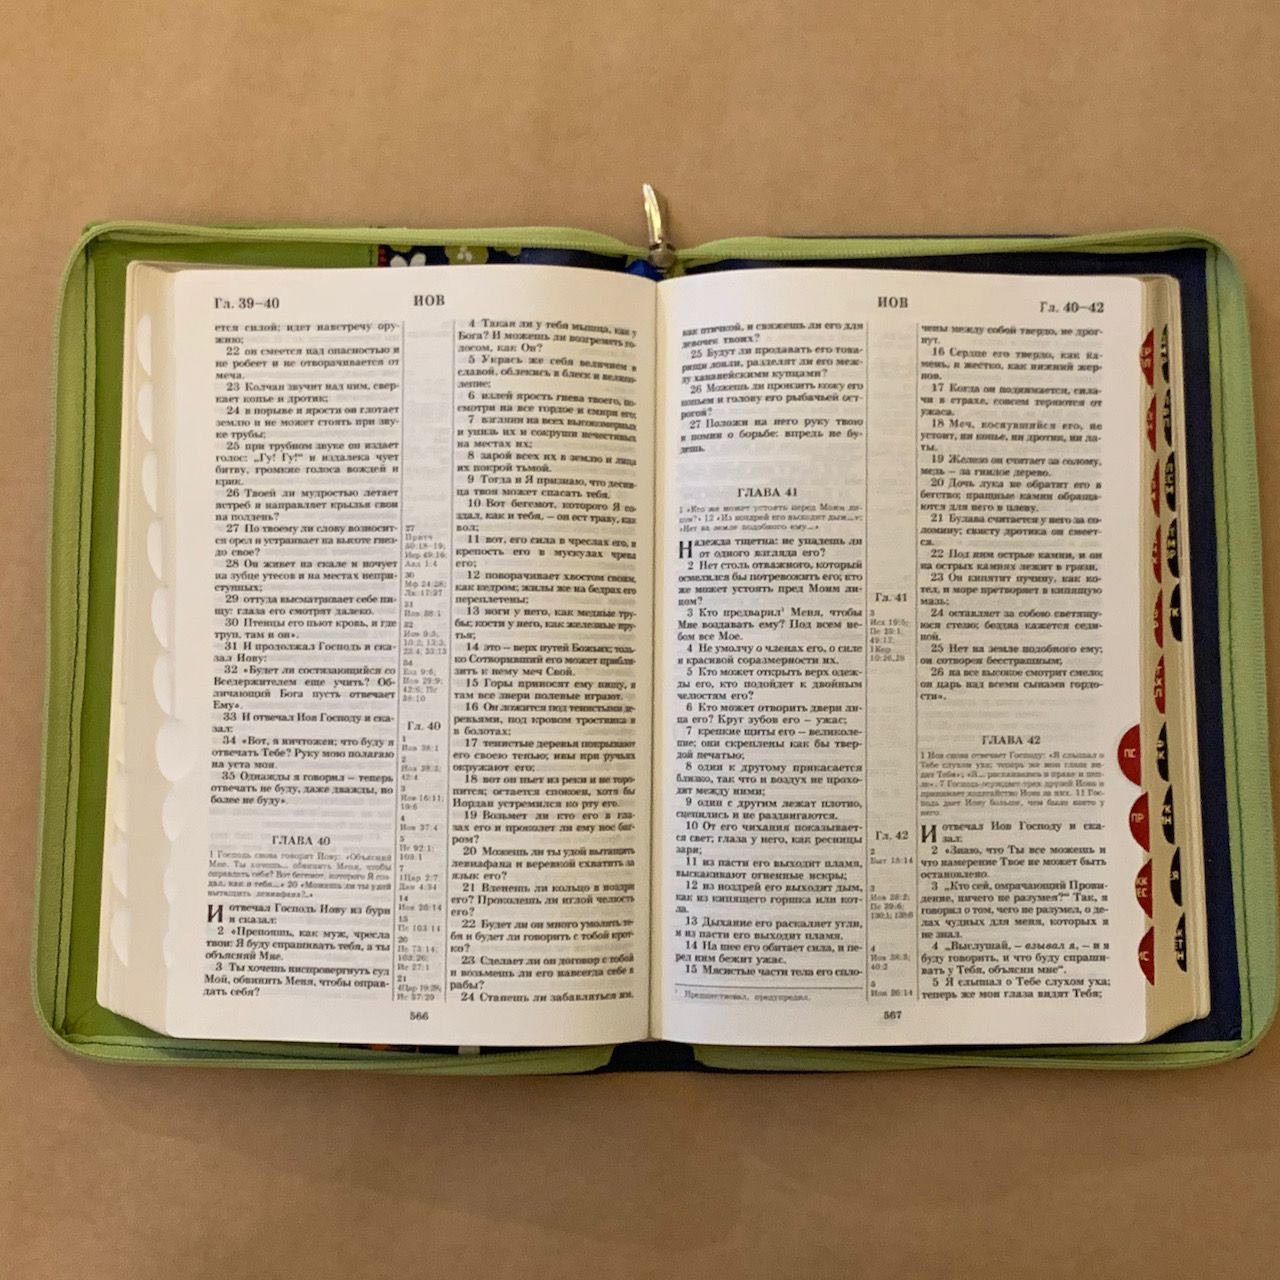 Библия 077DTzti формат, переплет из искусственной кожи на молнии с индексами, надпись золотом "Библия", цвет синий/ салатовый с тканевой вставкой из цветов, большой формат, 180*260 мм, цветные карты, крупный шрифт